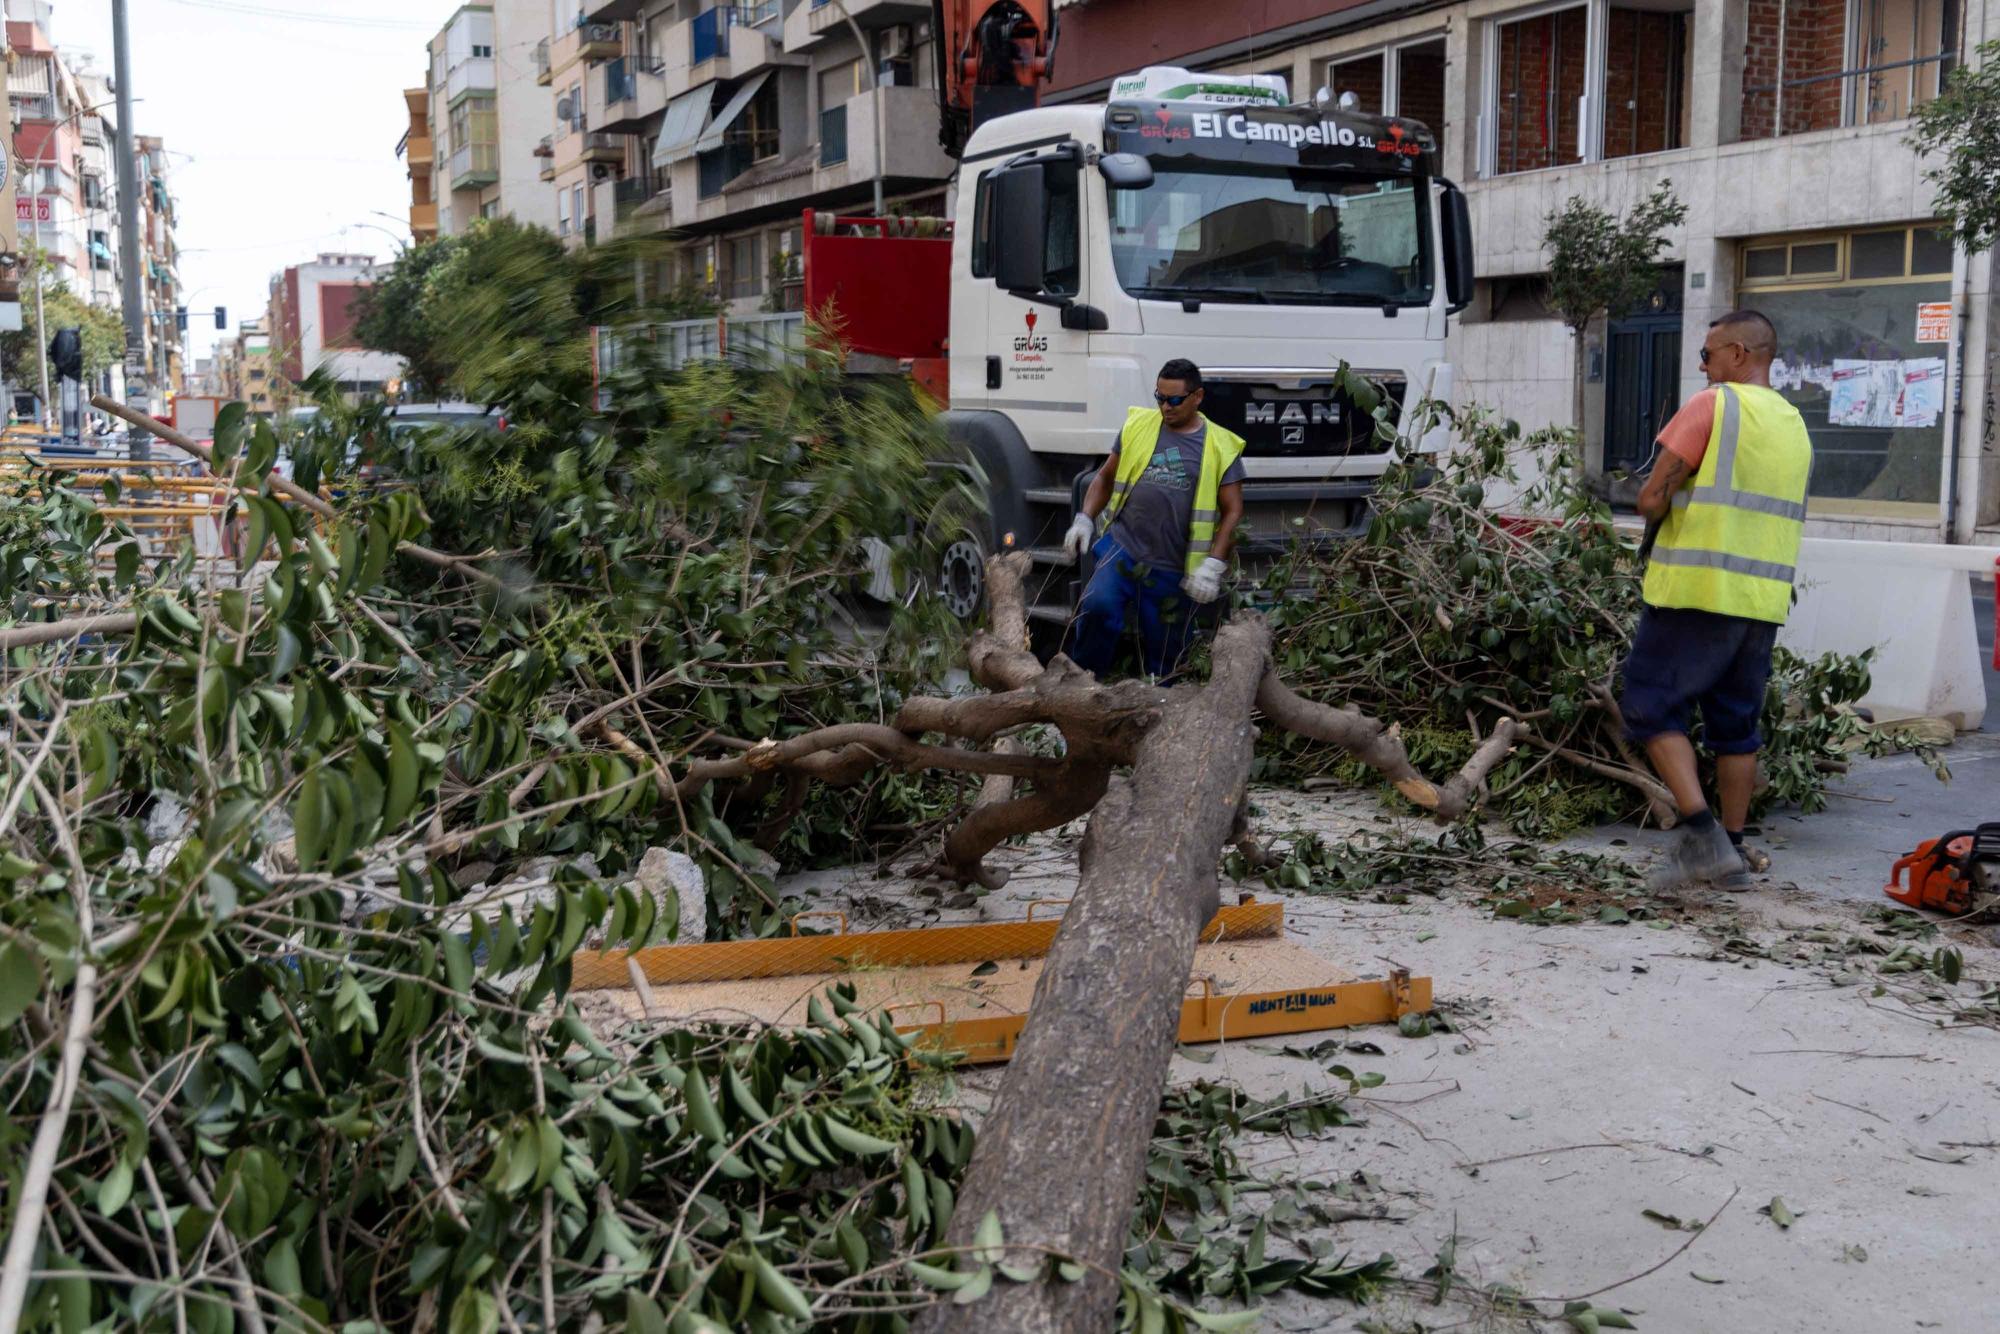 Arrancan árboles en la zona de obras de la Avenida de Jijona y Maestro Alonso